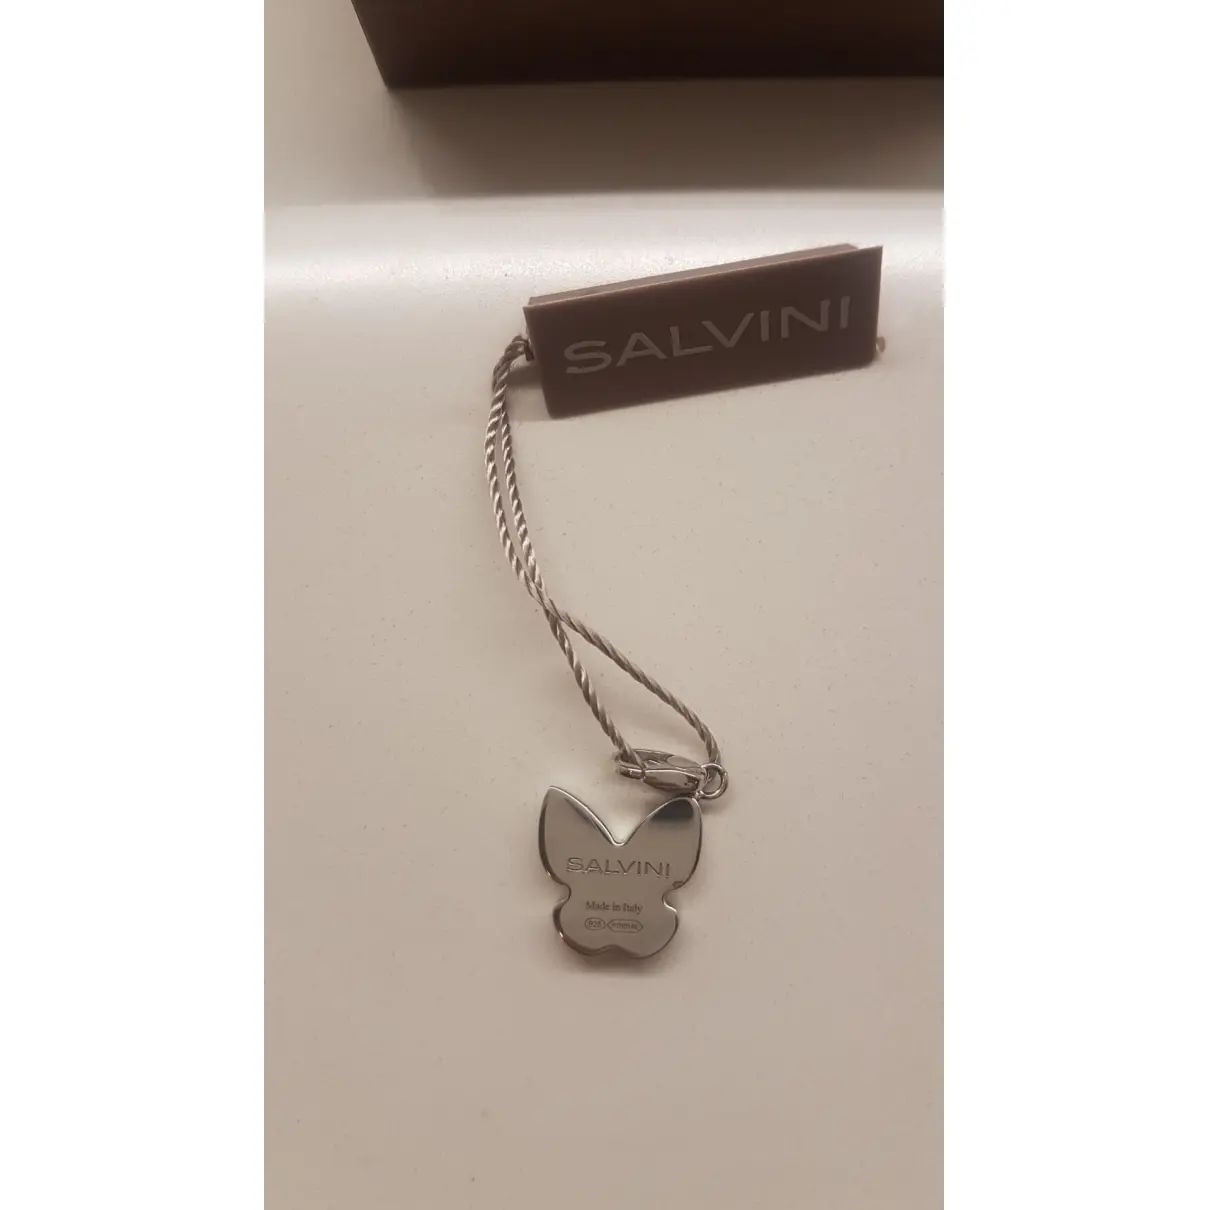 Salvini Silver pendant for sale